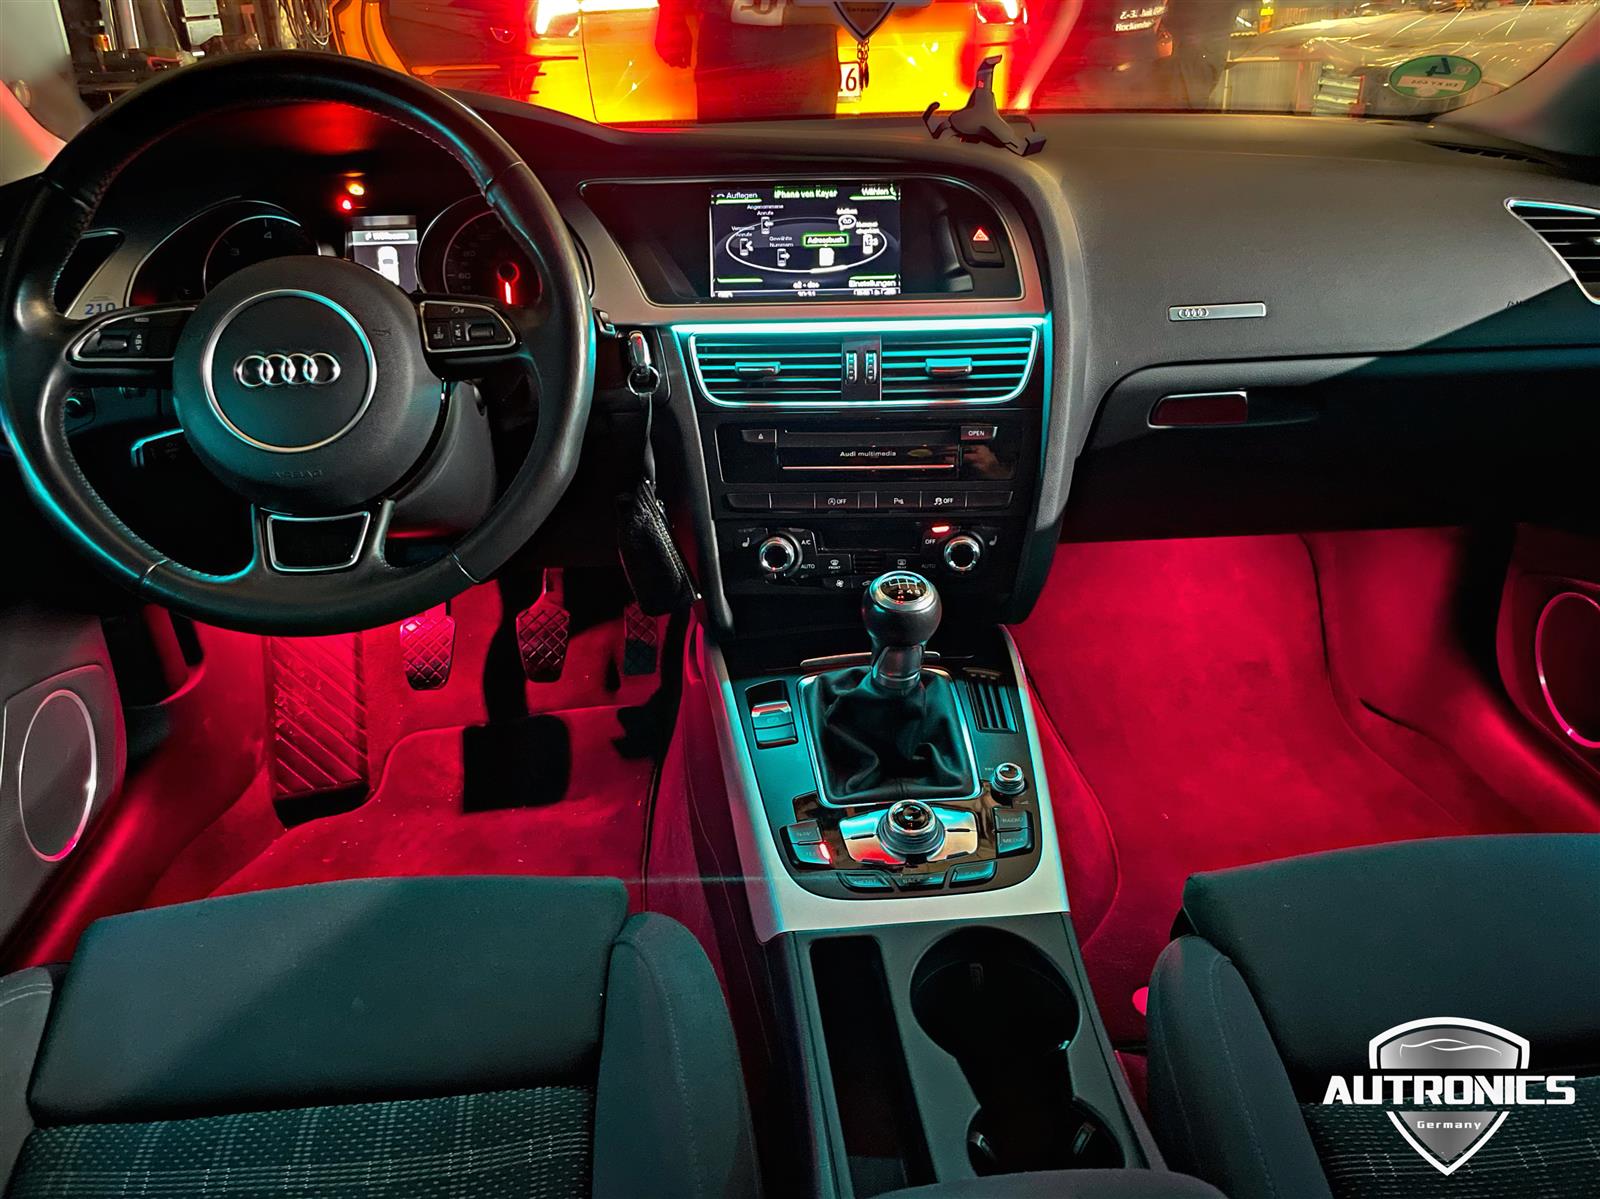 Ambientebeleuchtung Nachrüsten im Auto Beleuchtung LED Ambiente geeignet für Audi A5 8T - 1